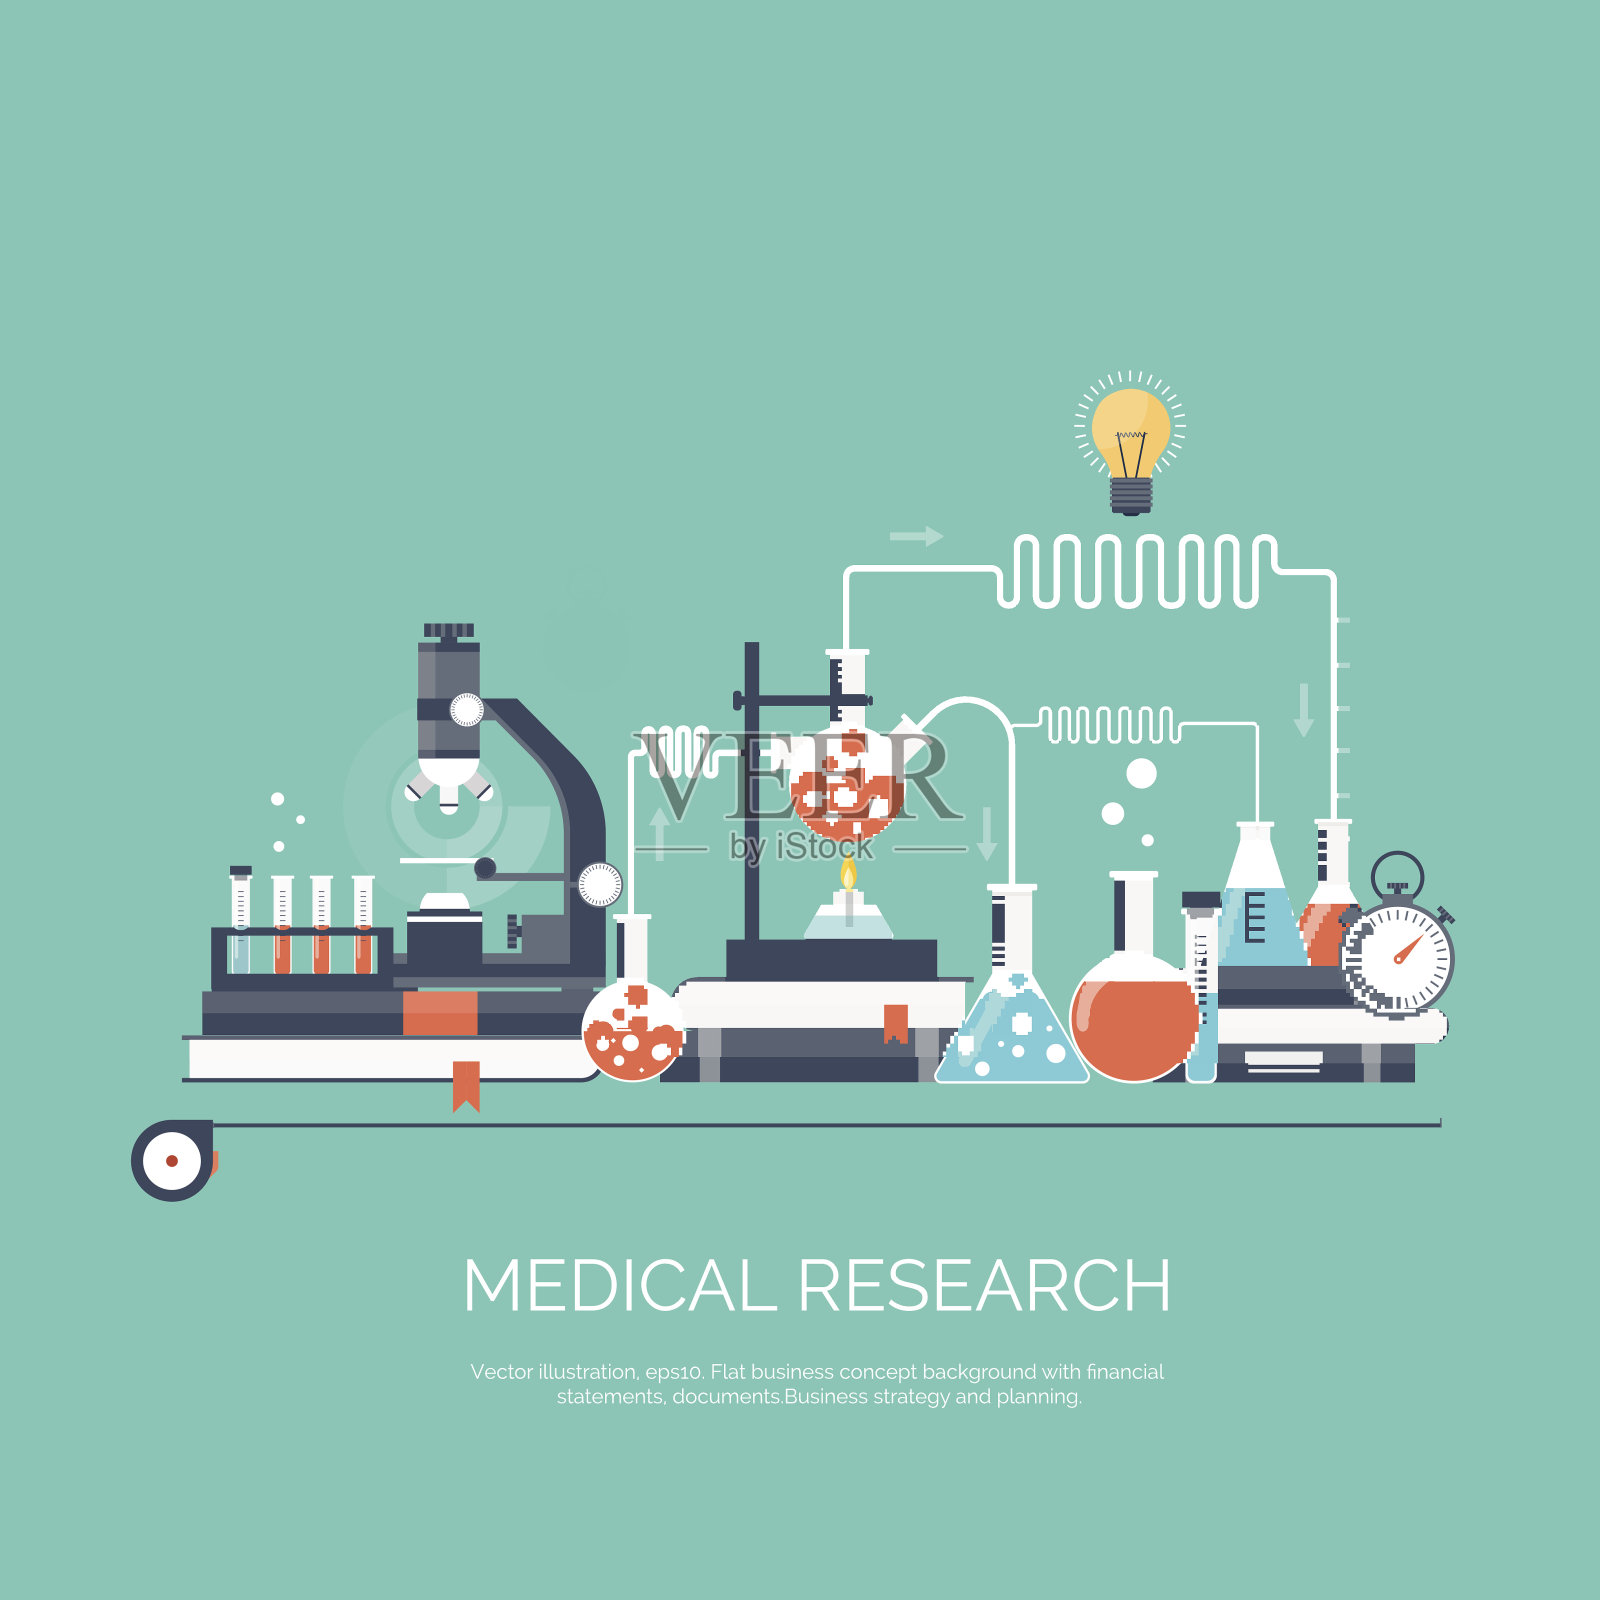 矢量插图。简单的医学和化学背景。医学研究、实验插画图片素材